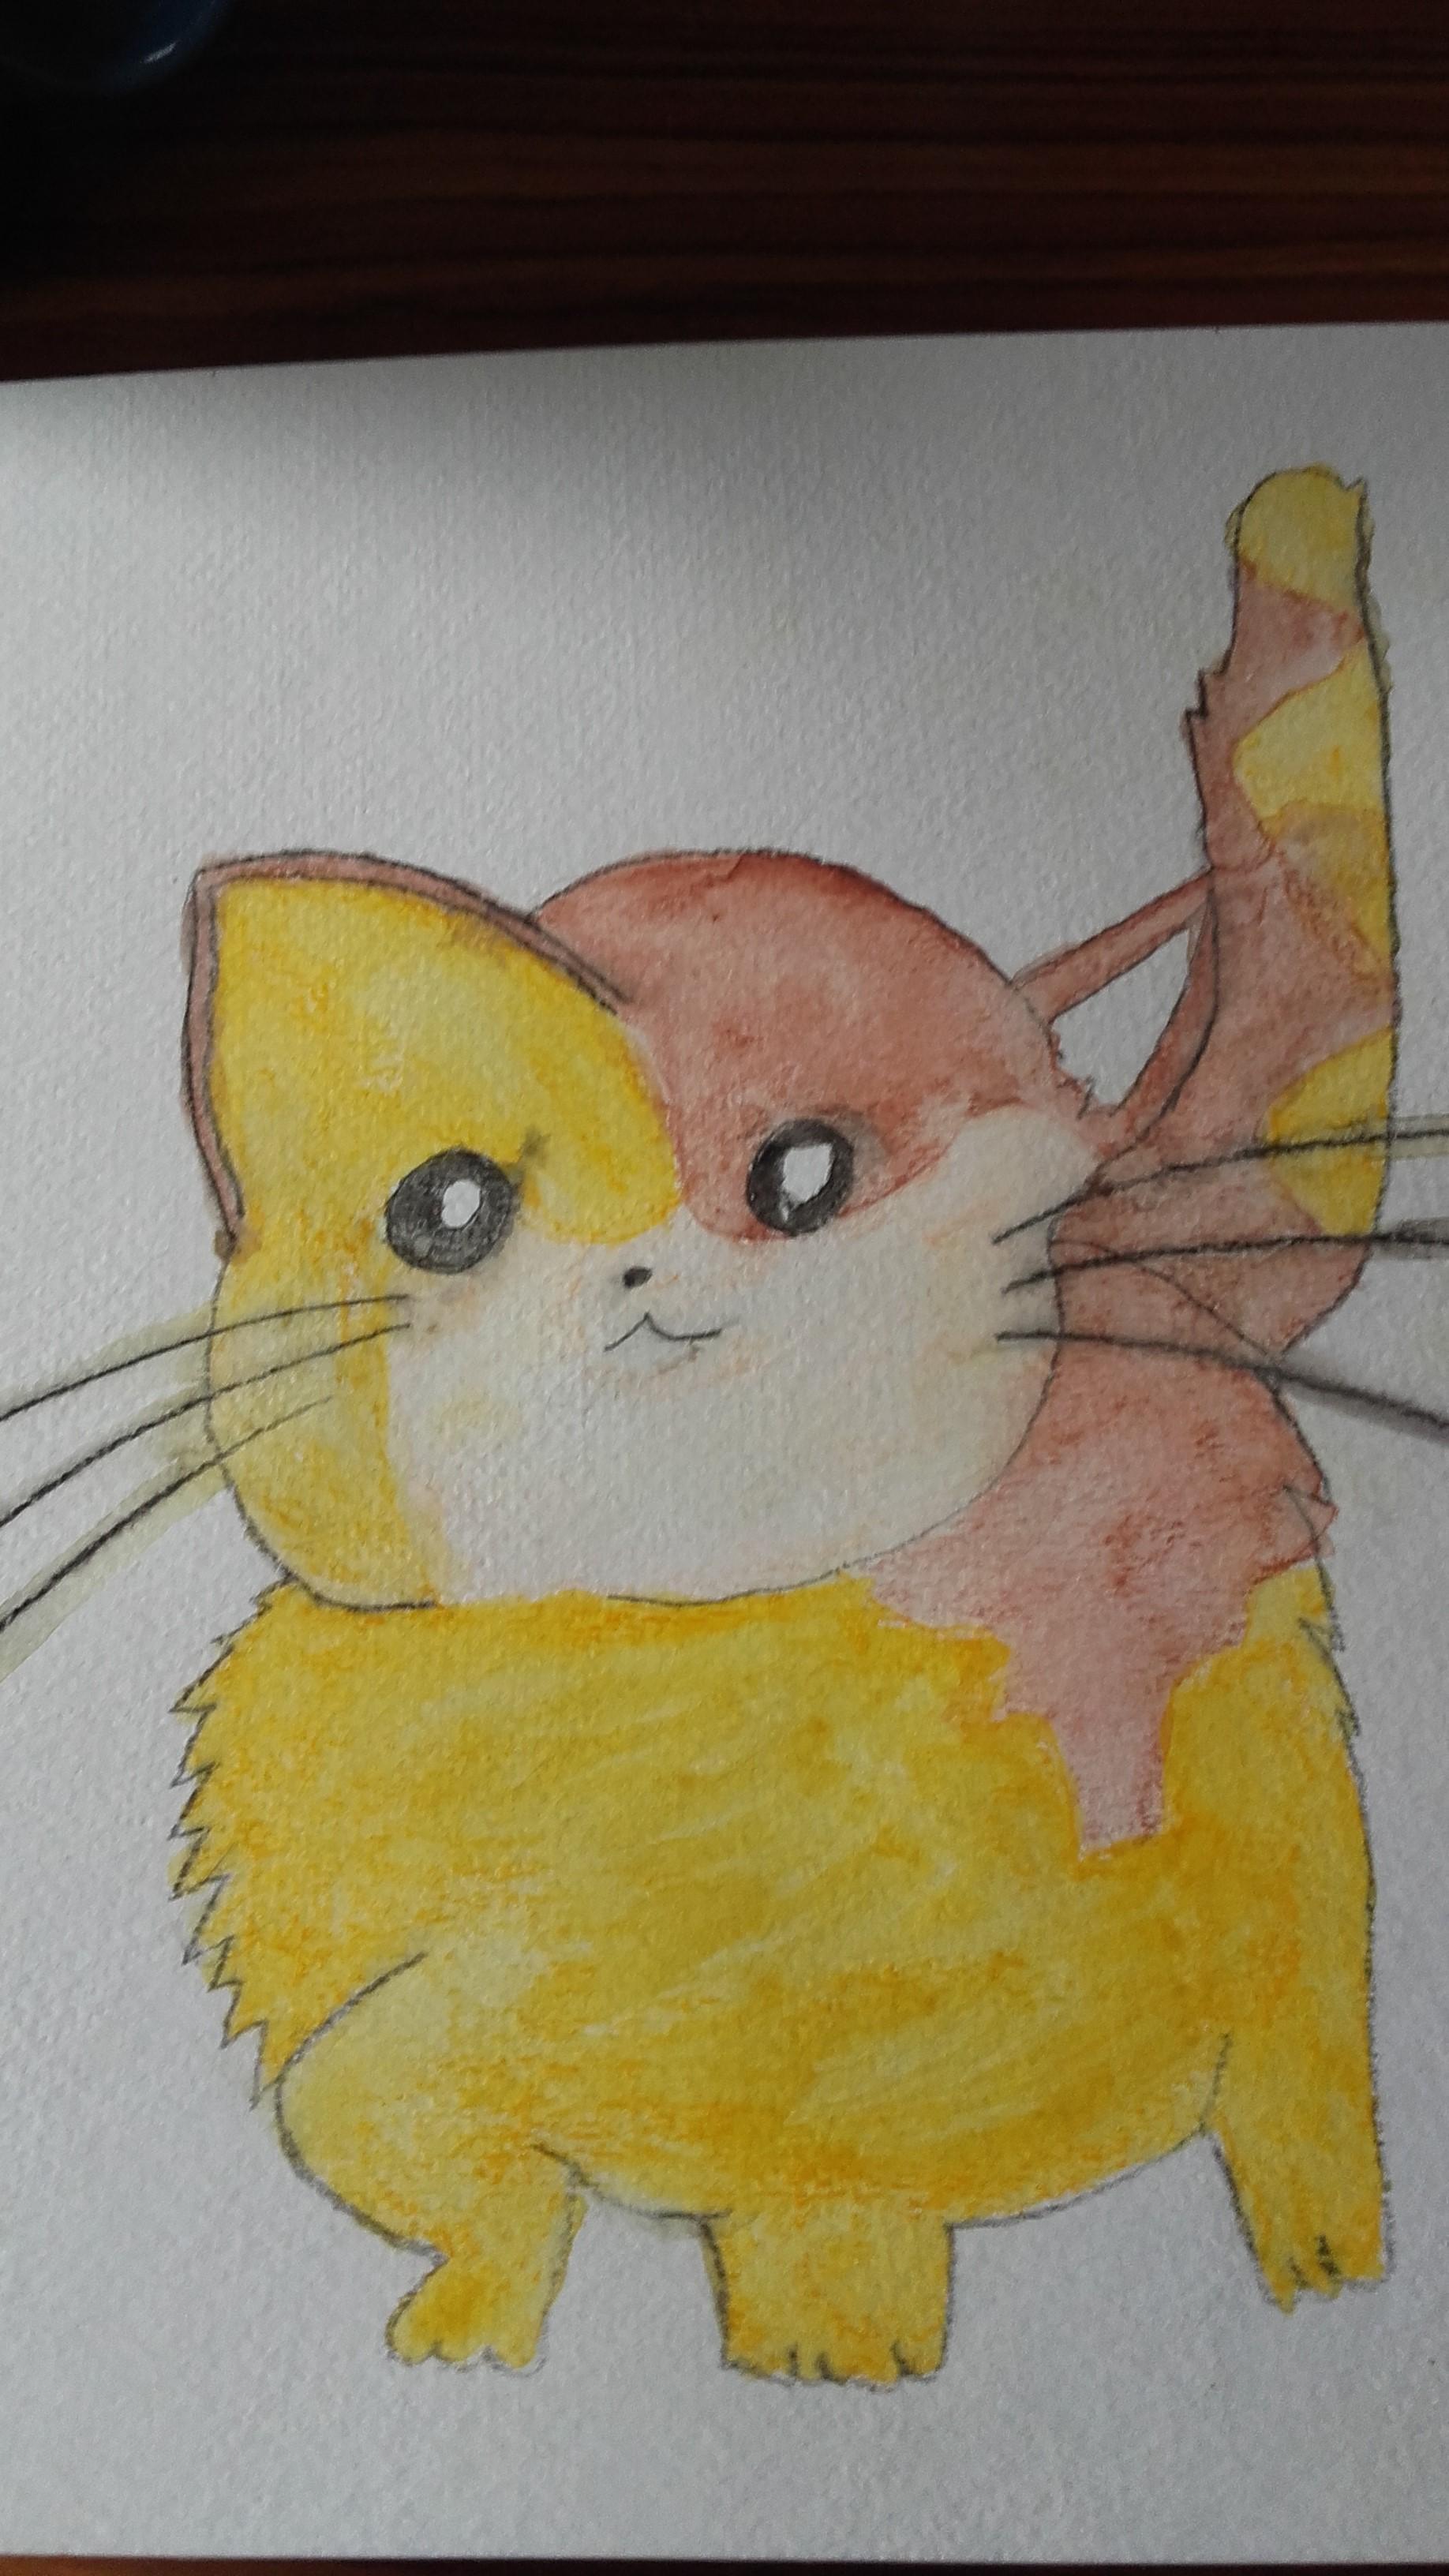 troc de troc "kawaii cat - 2" - aquarelle 2016 - (chat) image 0